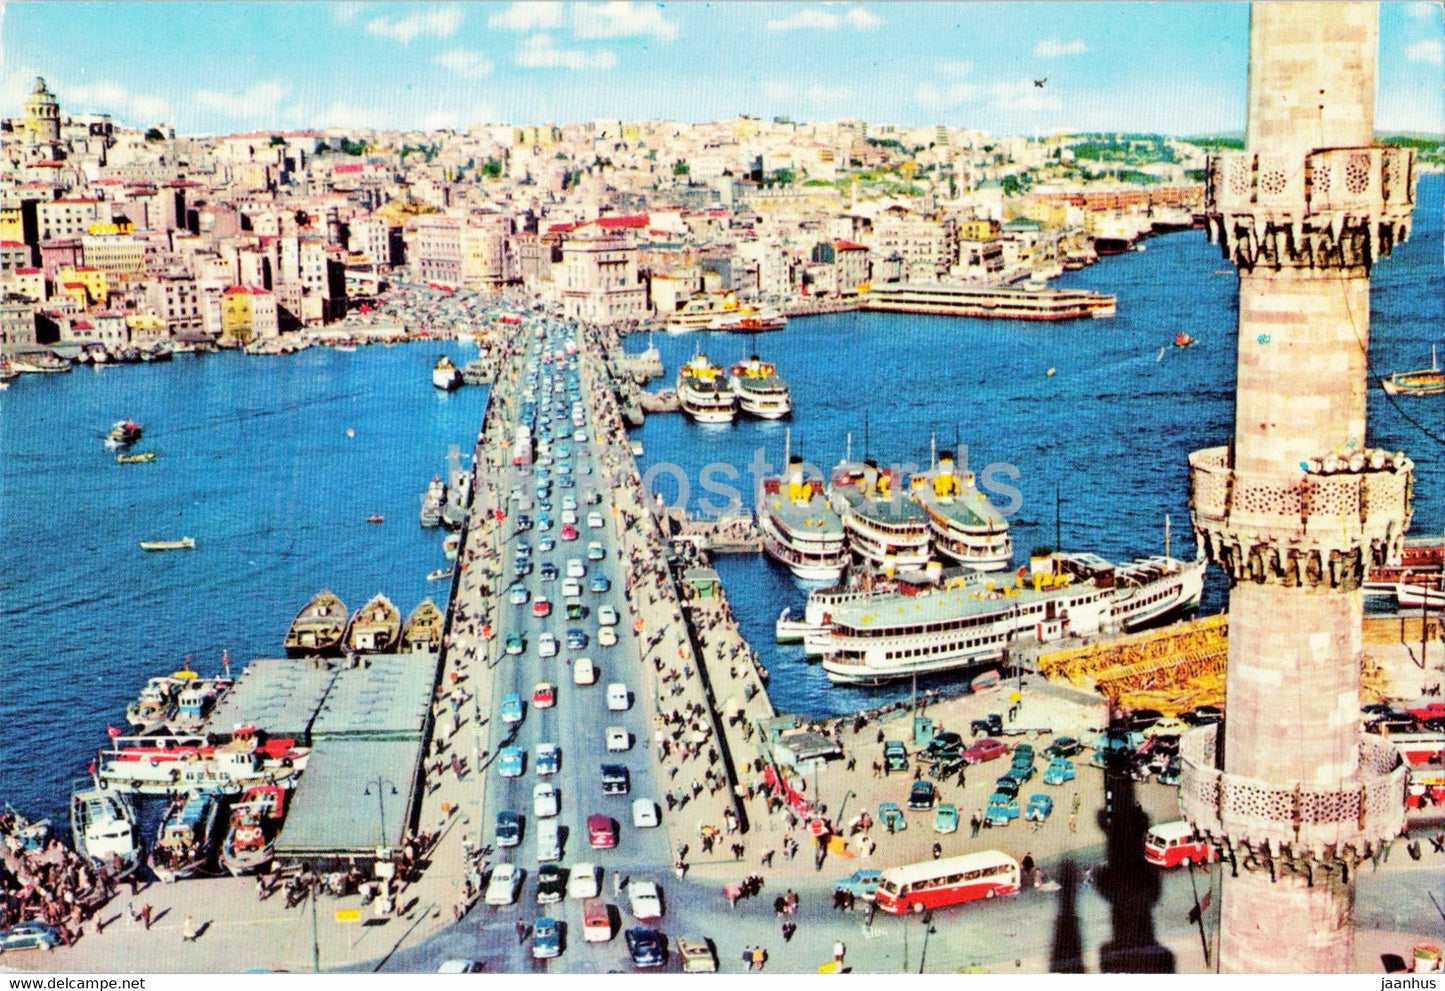 Istanbul - Galata Bridge - ship - boat - Keskin Color - 112 - Turkey - unused - JH Postcards